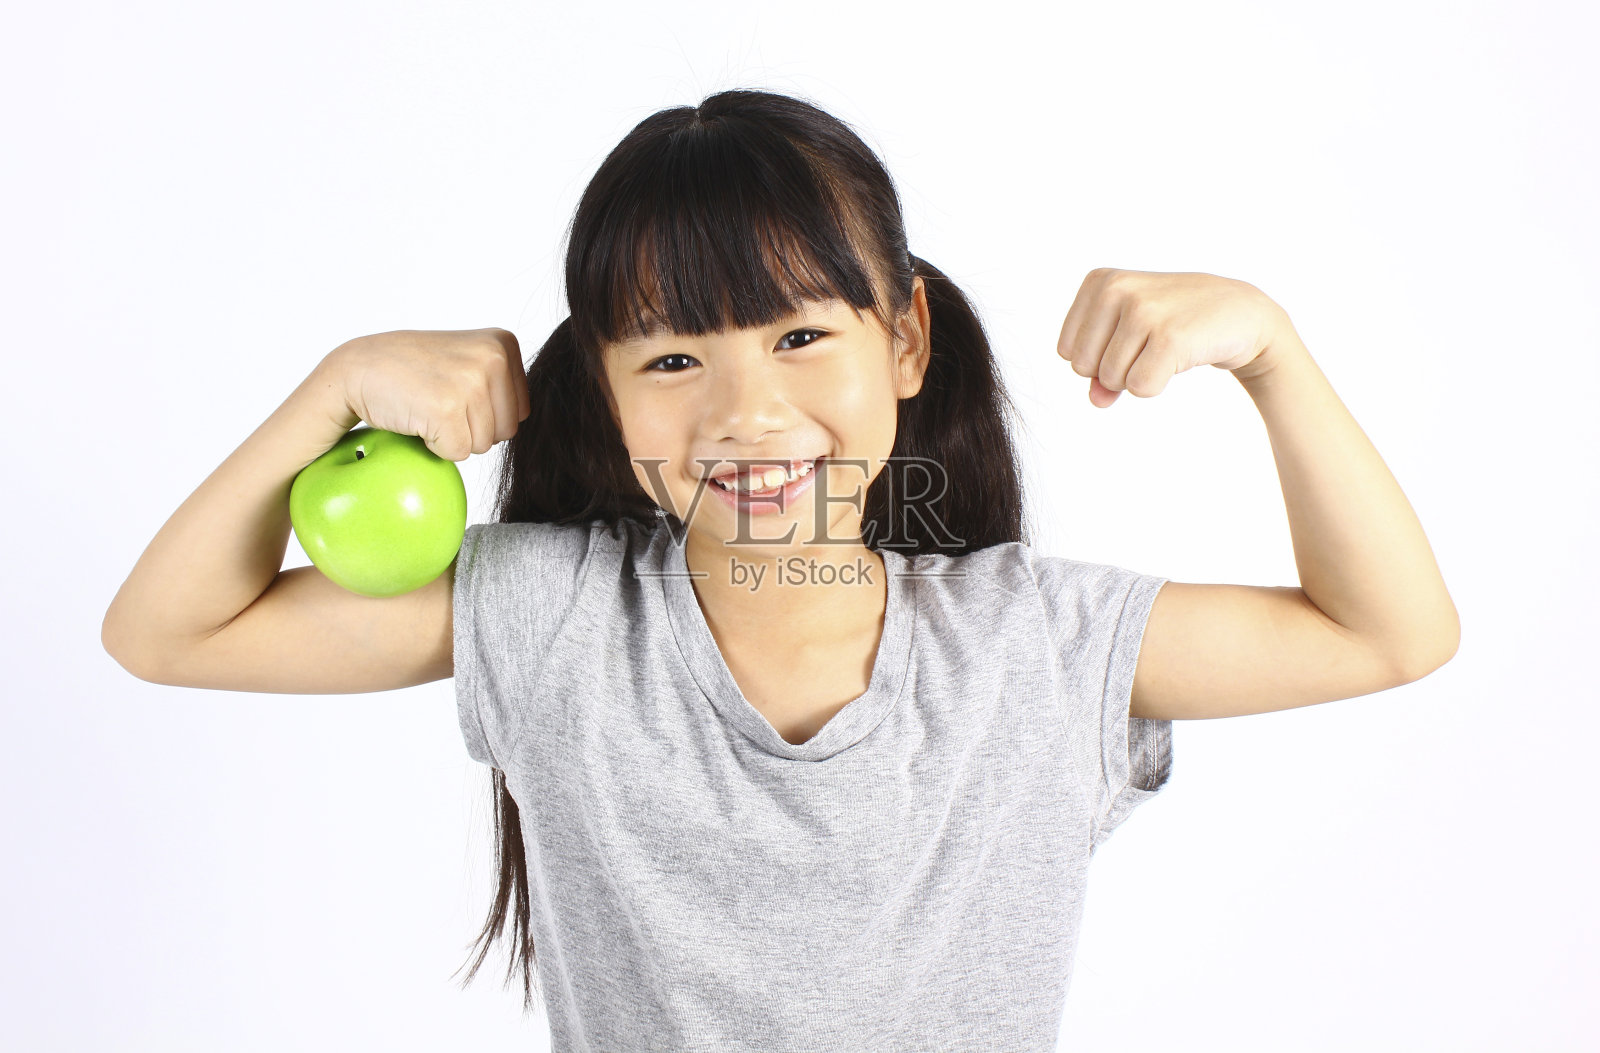 一个小女孩在炫耀苹果的时候展示了她的肌肉照片摄影图片